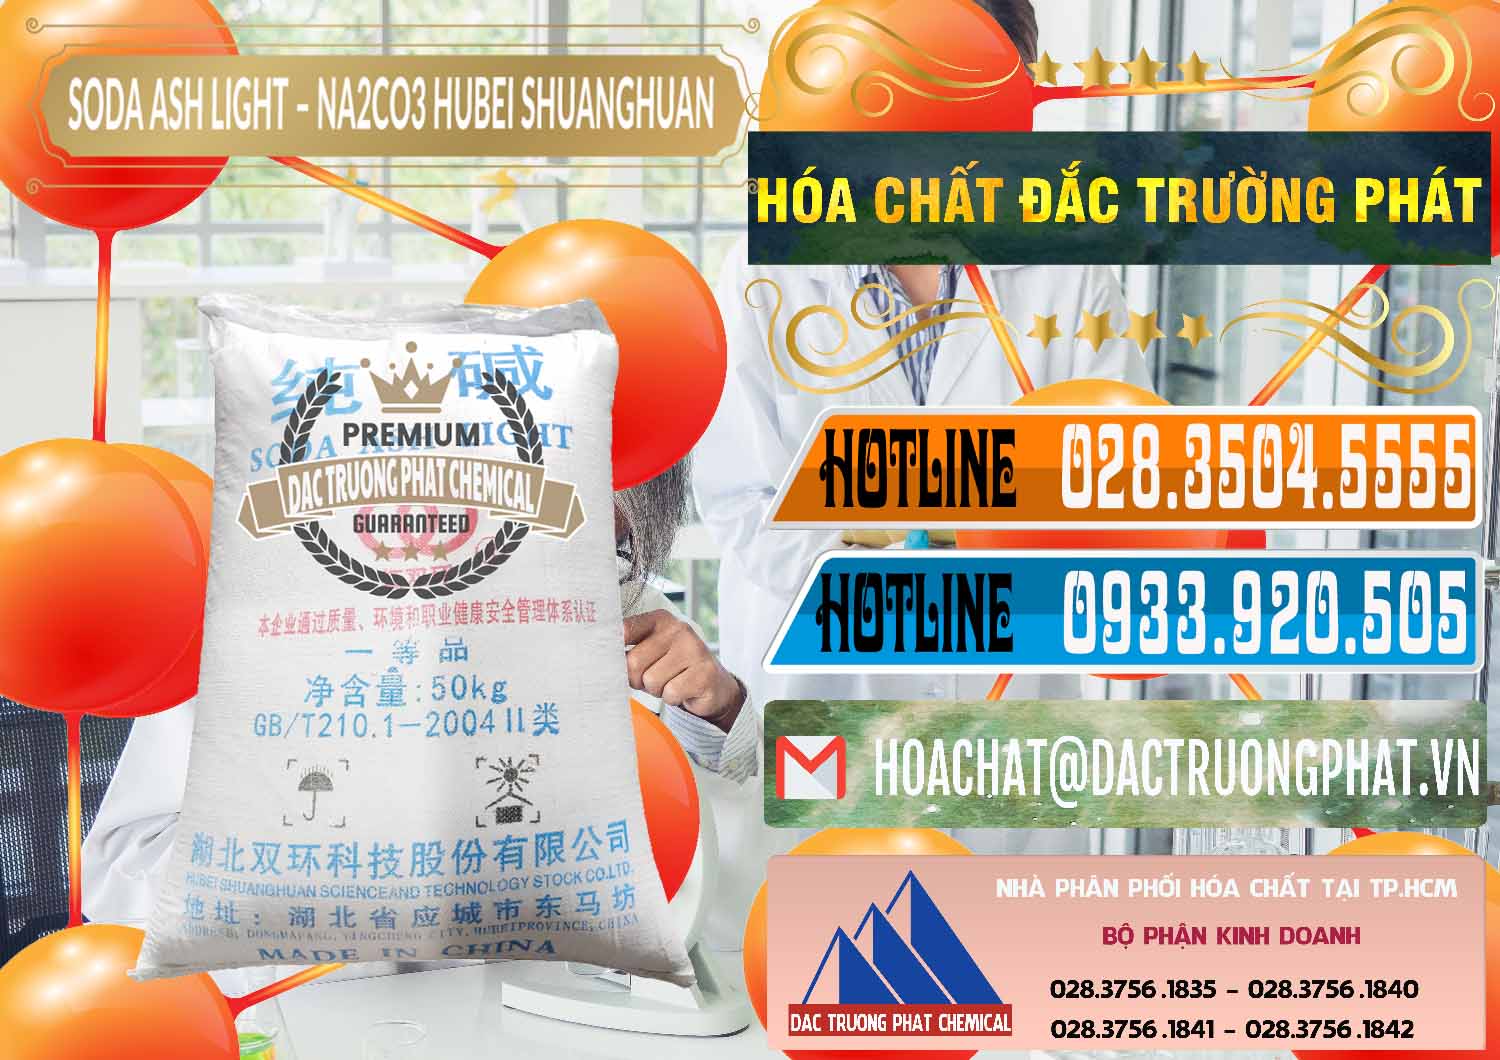 Cty chuyên cung cấp - bán Soda Ash Light - NA2CO3 2 Vòng Tròn Hubei Shuanghuan Trung Quốc China - 0130 - Đơn vị cung cấp _ nhập khẩu hóa chất tại TP.HCM - stmp.net